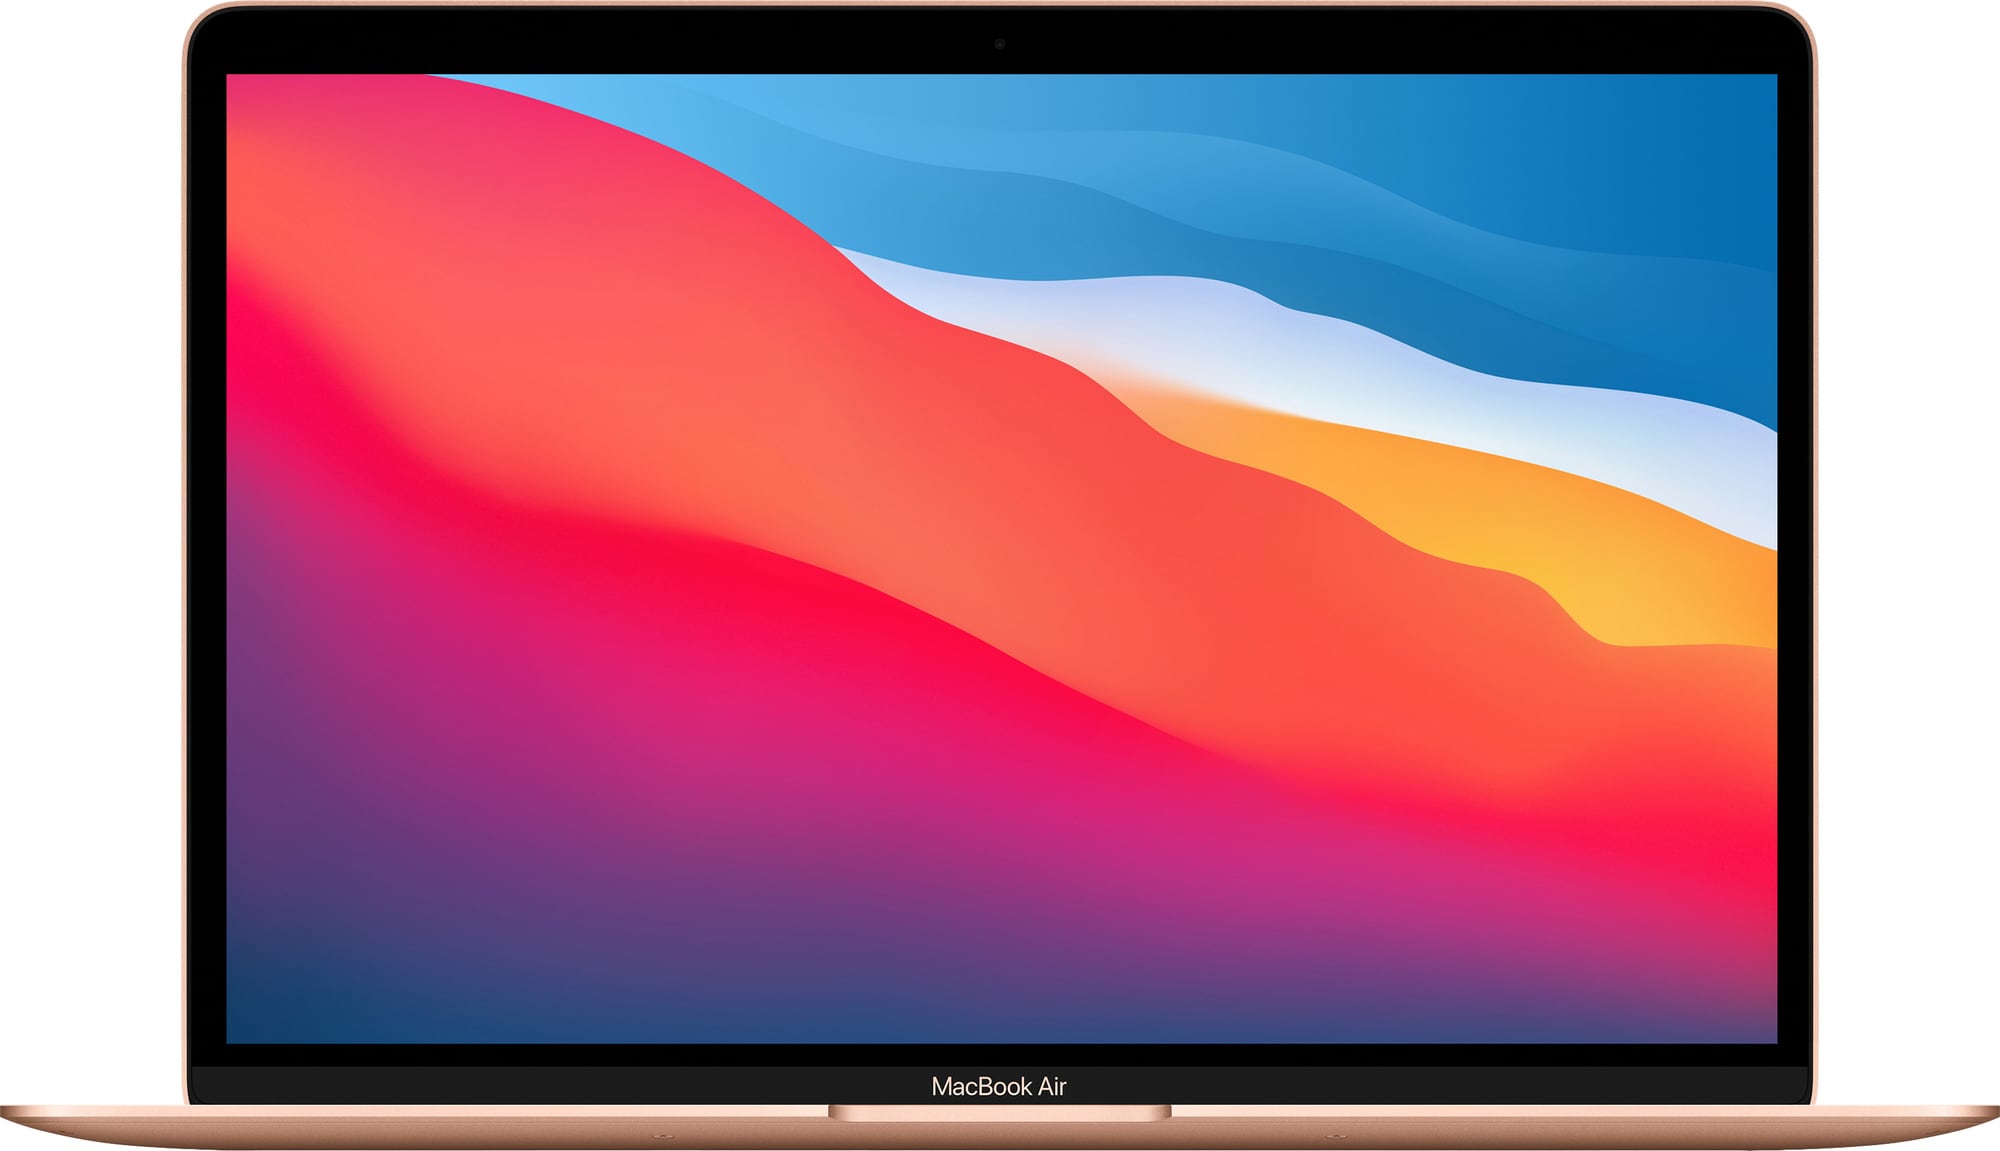 MacBook Air 13 M1/8/256 2020 (gold) | Elgiganten